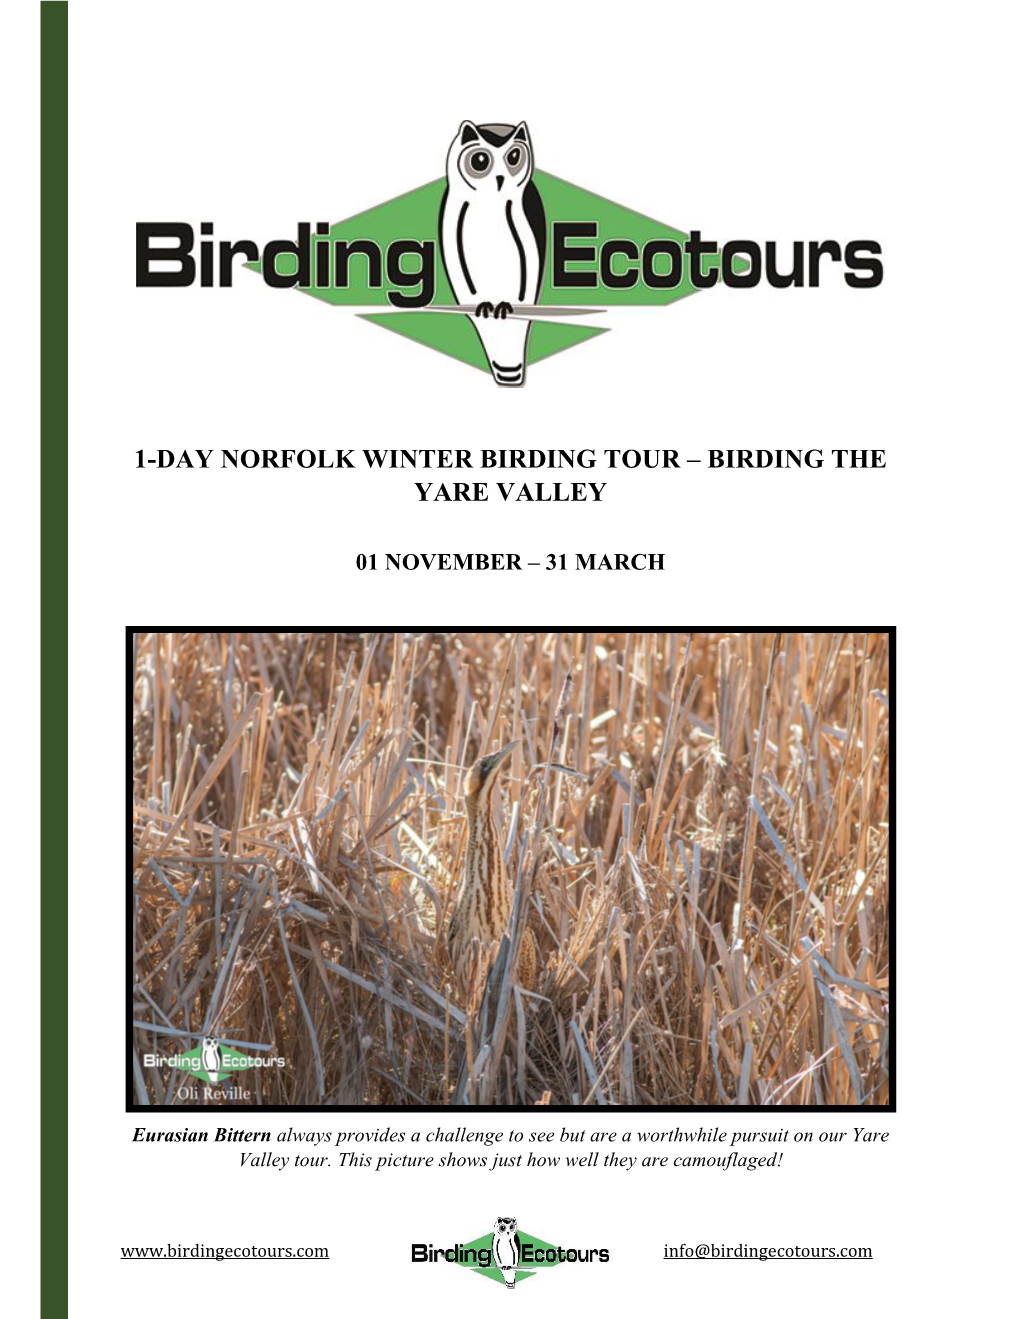 1-Day Norfolk Winter Birding Tour – Birding the Yare Valley